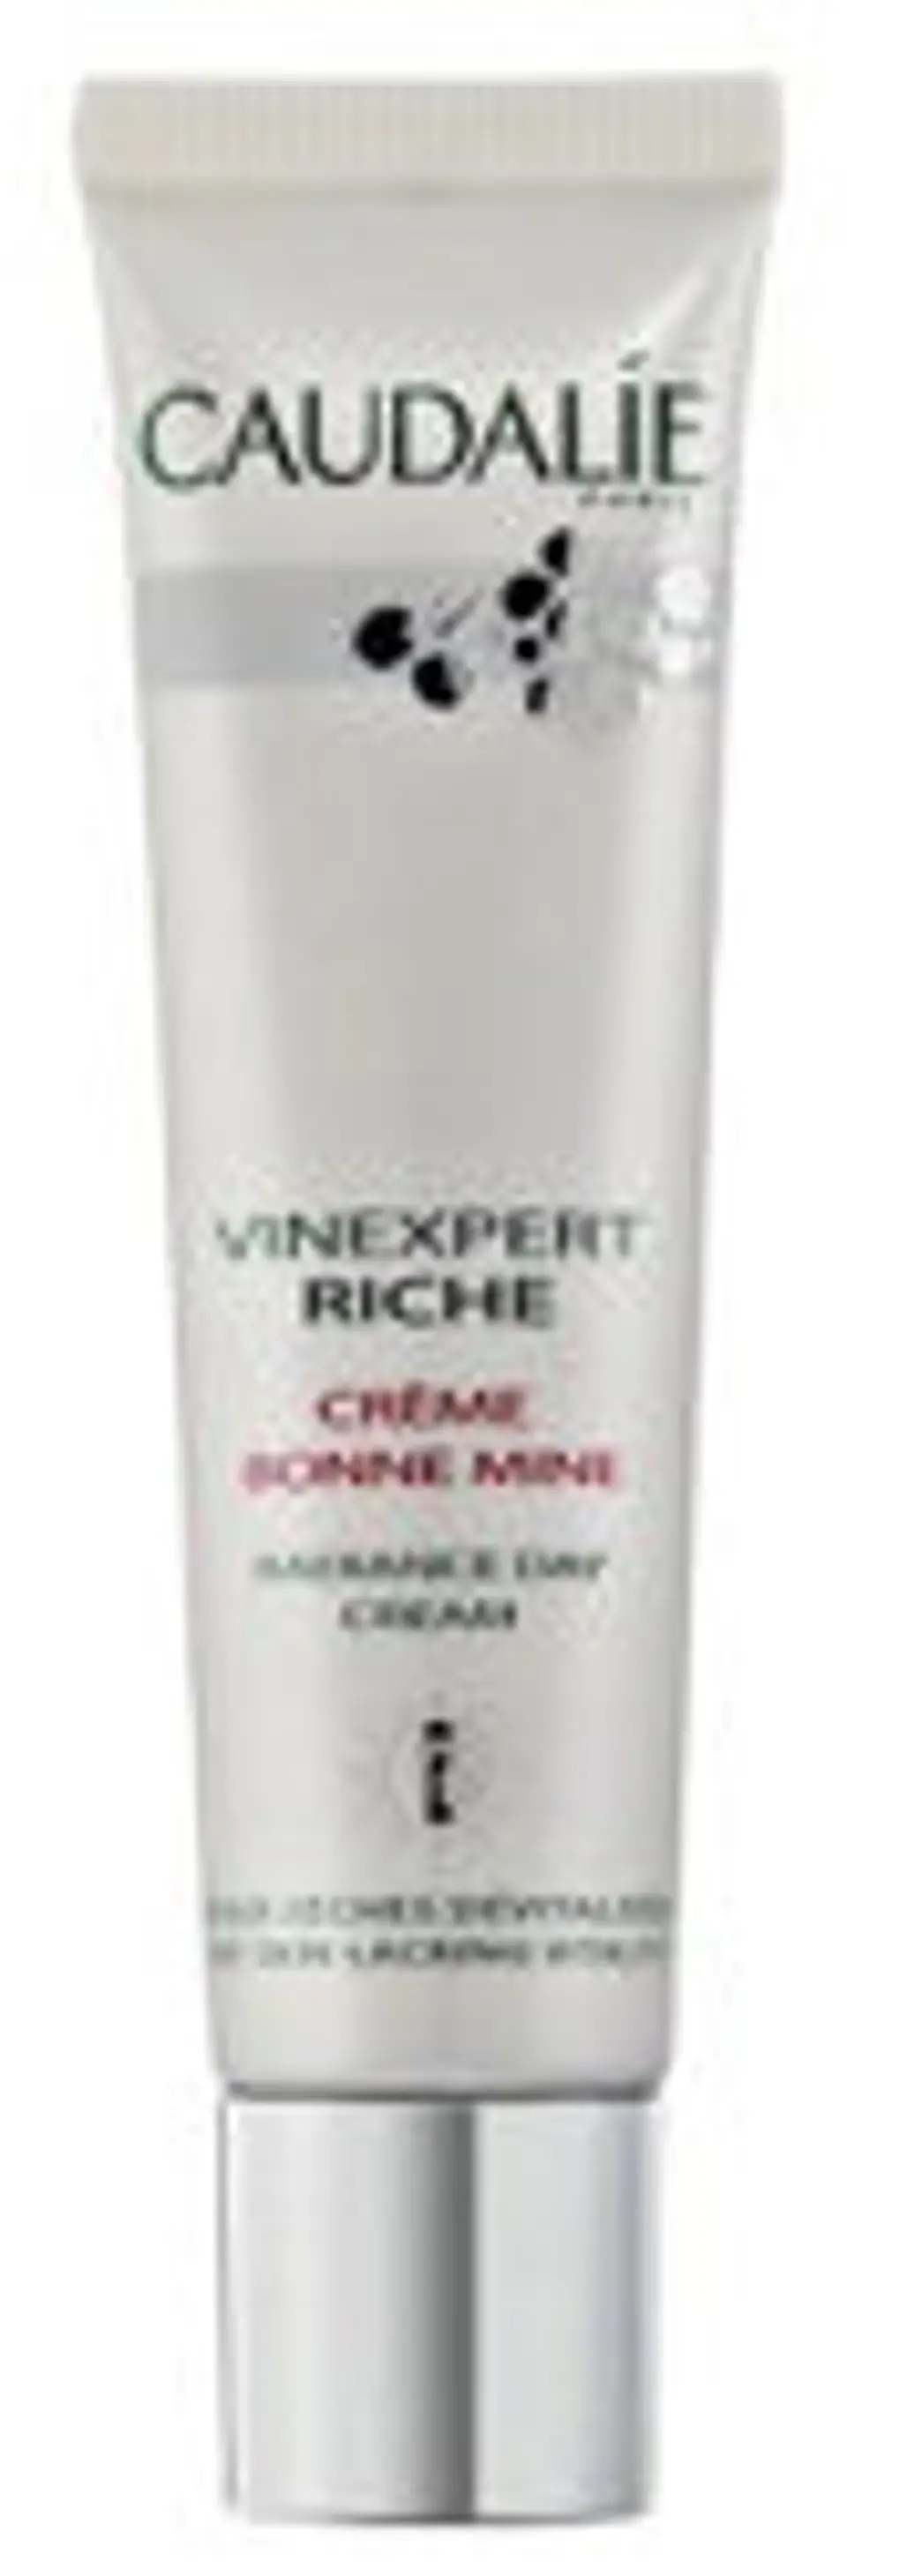 Caudalie Vinexpert Riche Radiance Day Cream SPF 10